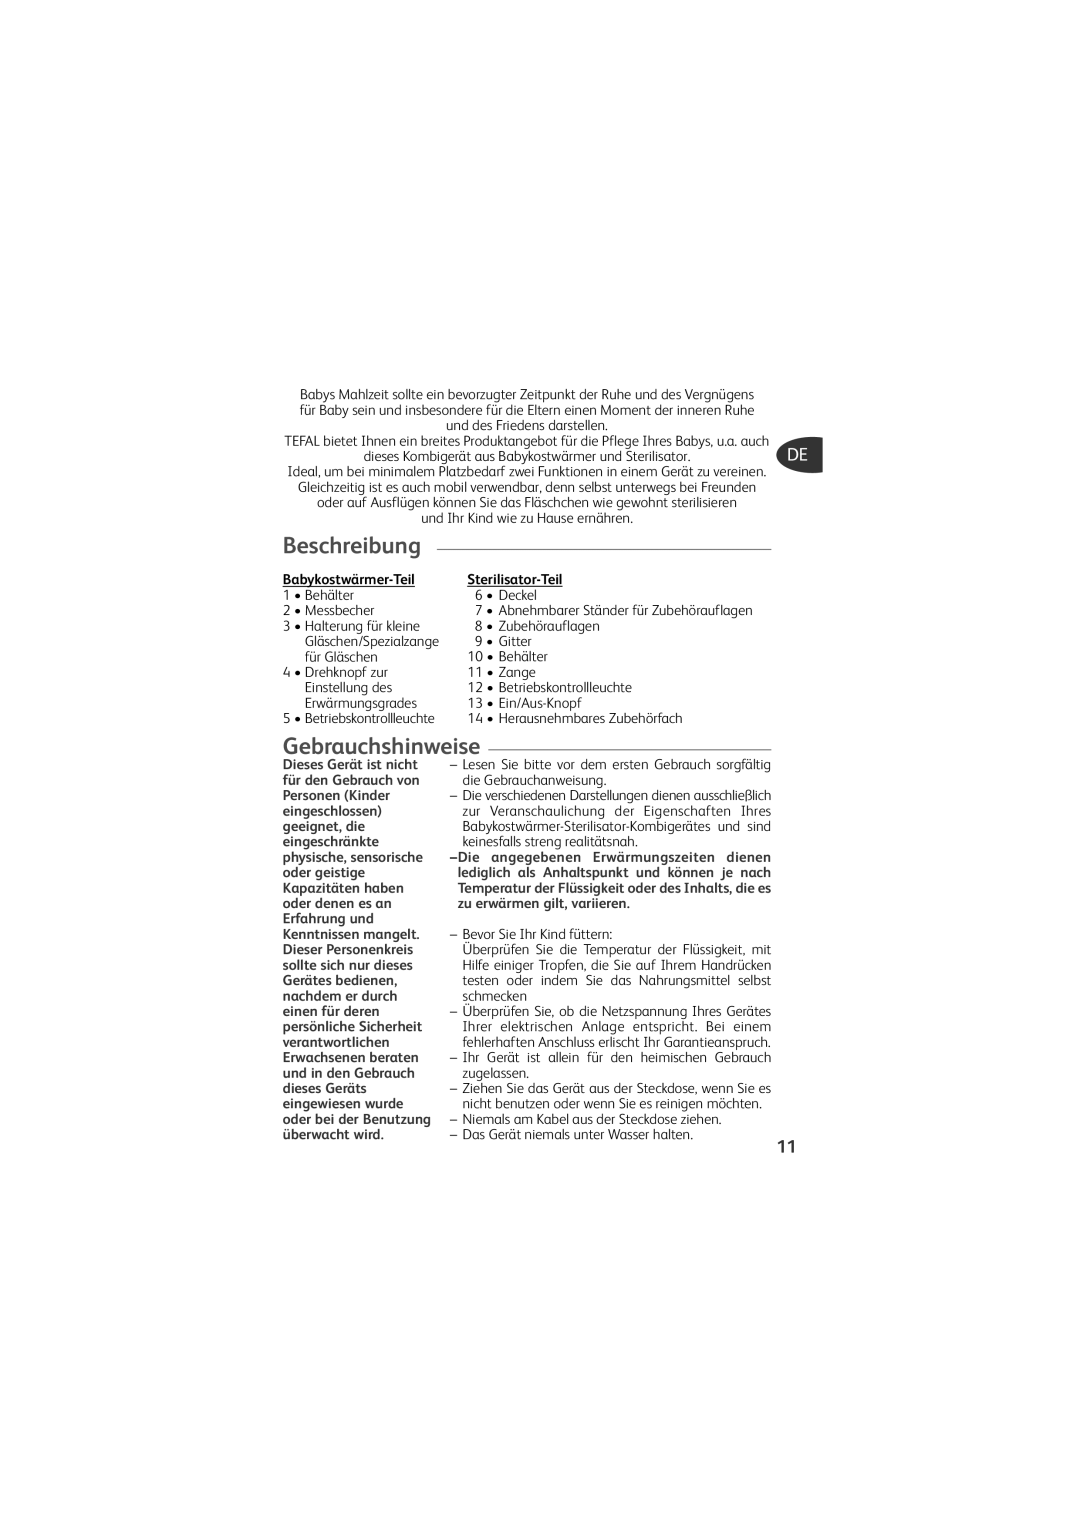 Tefal TD4200K0 manual Beschreibung, Gebrauchshinweise, Babykostwärmer-Teil, Sterilisator-Teil 